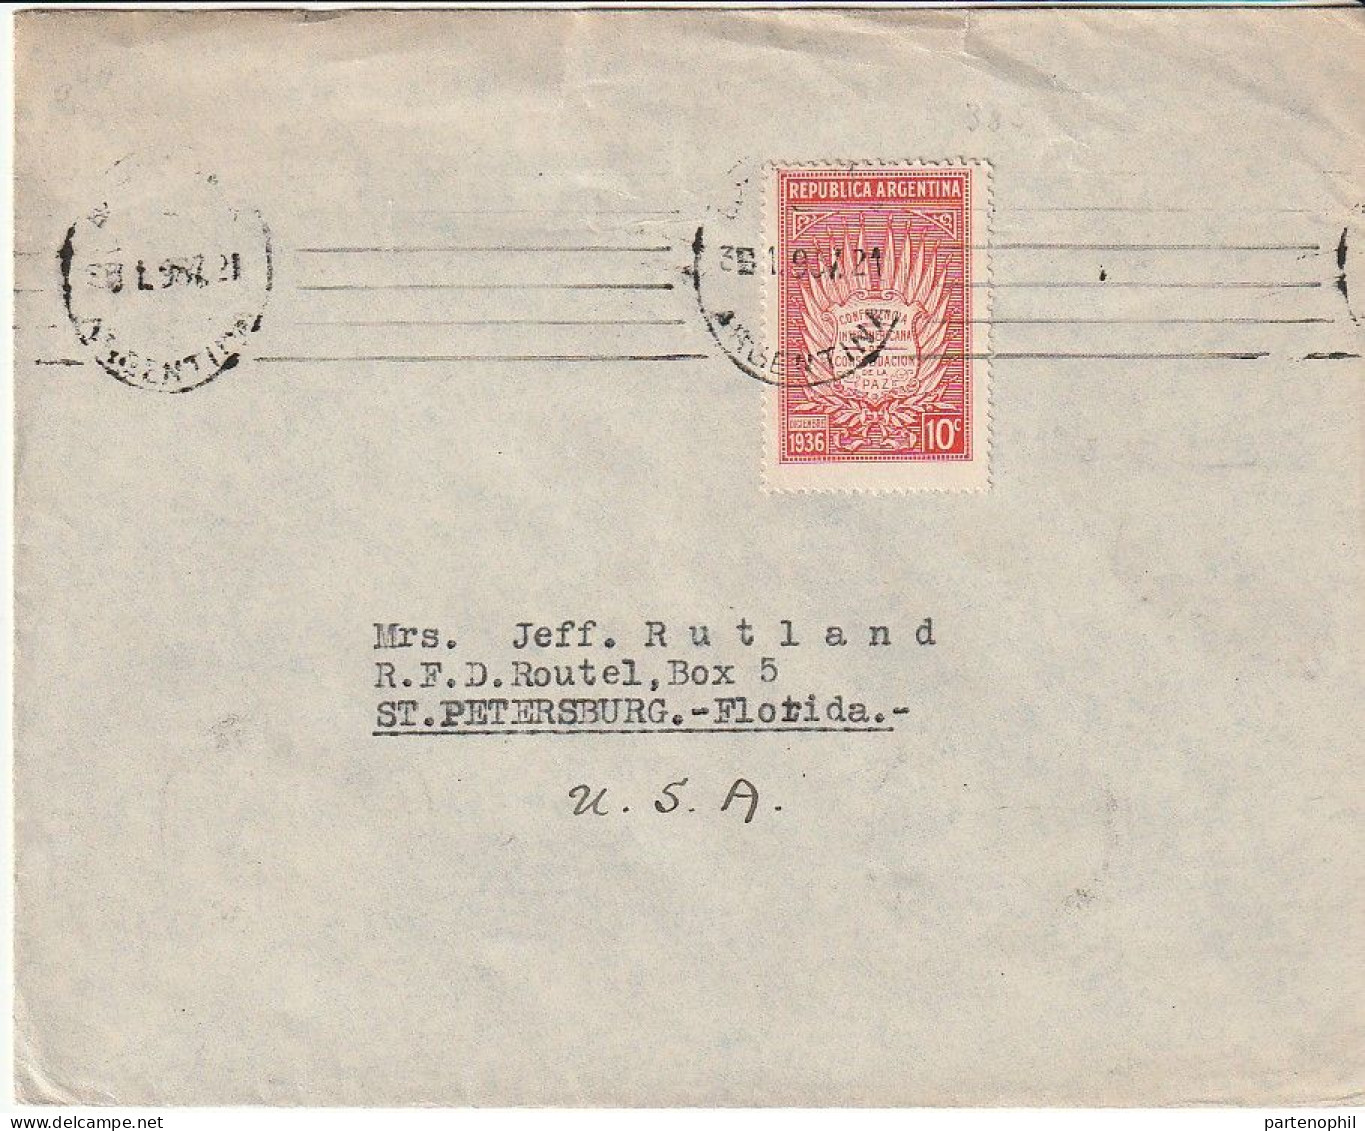 Republica Argentina Argentinien 1937 -  Postgeschichte - Storia Postale - Histoire Postale - Briefe U. Dokumente